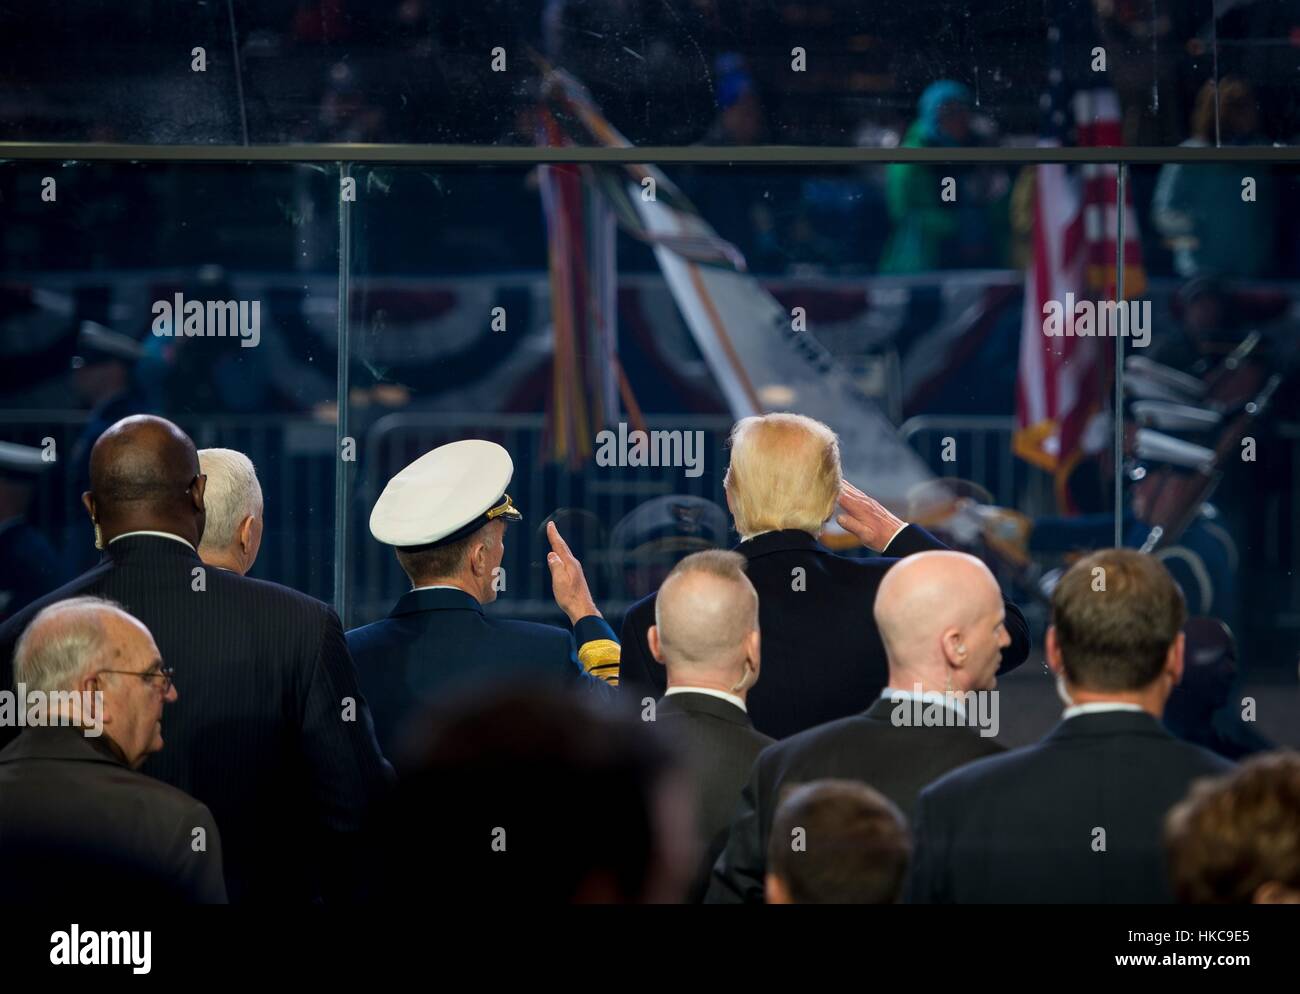 US-Präsident Donald Trump salutiert stehen die Truppen marschieren durch vom weißen Haus Überprüfung während der 58. Presidential Inauguration 20. Januar 2017 in Washington, DC. Stockfoto